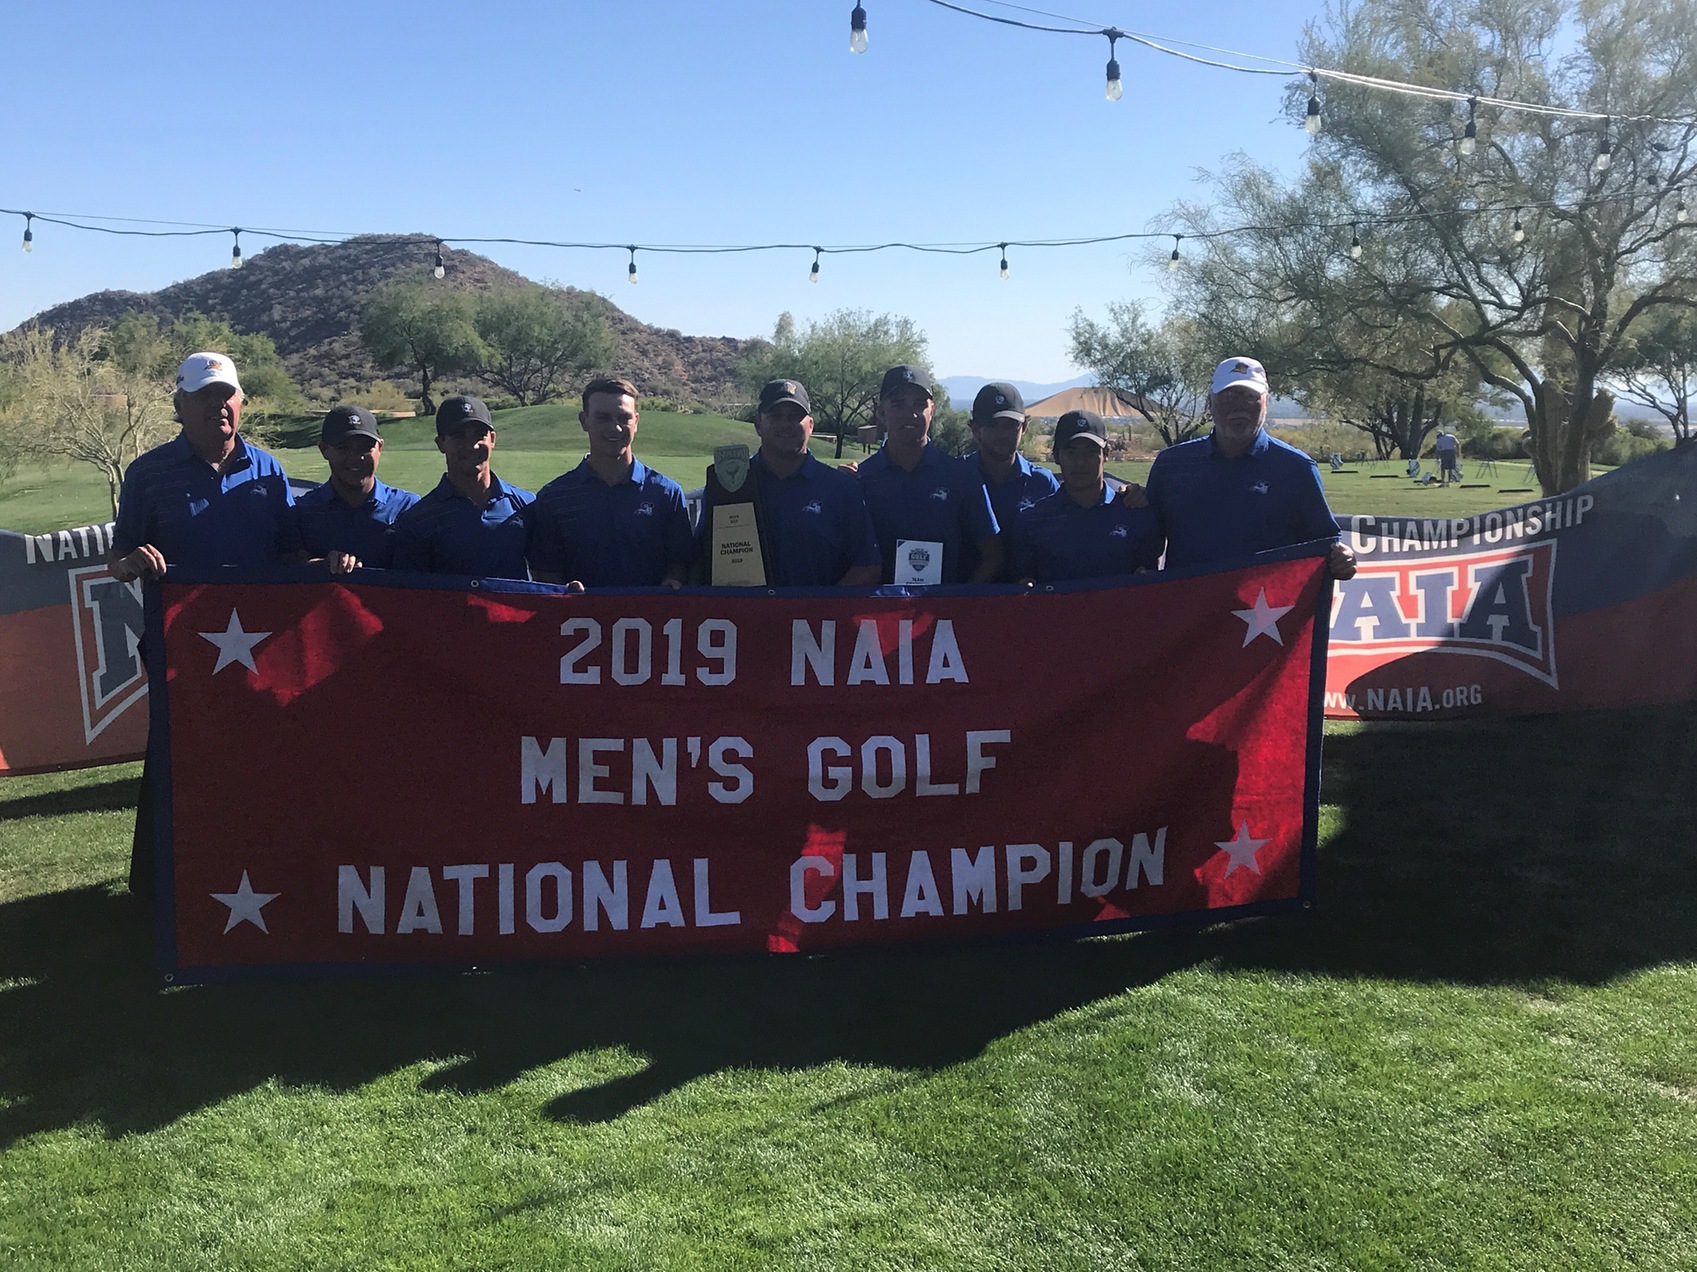 2019 NAIA Men's Golf Coaches' Top 25 Poll Preseason